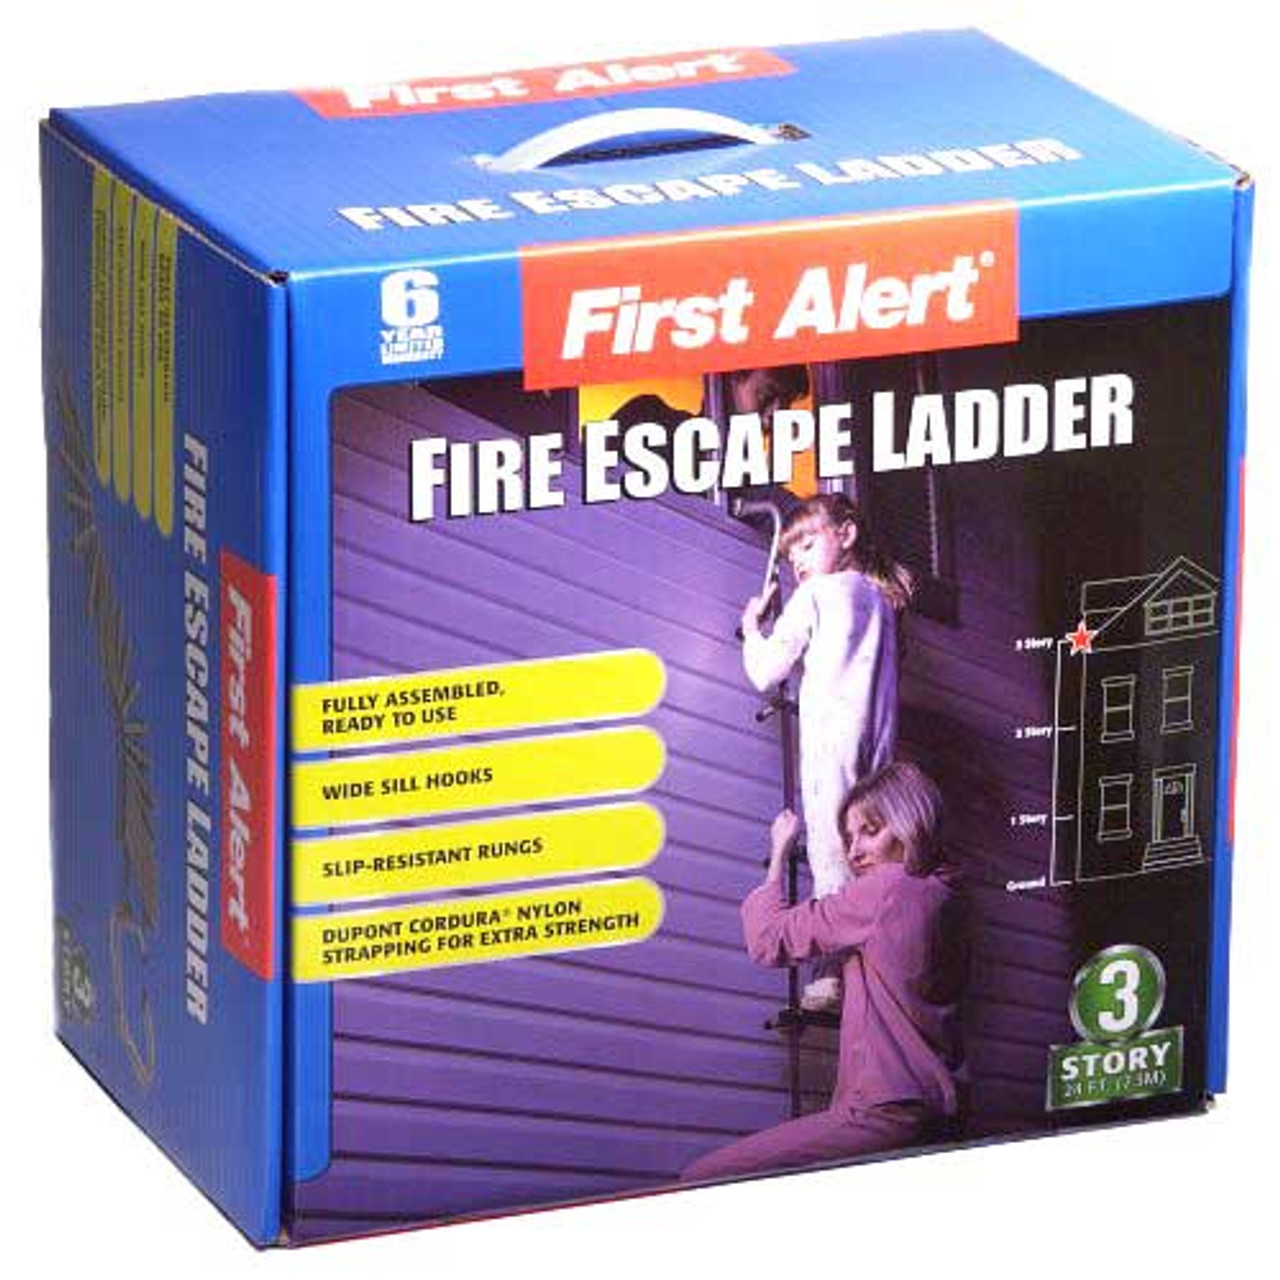 First Alert Fire Escape Ladder 3 Story - 24